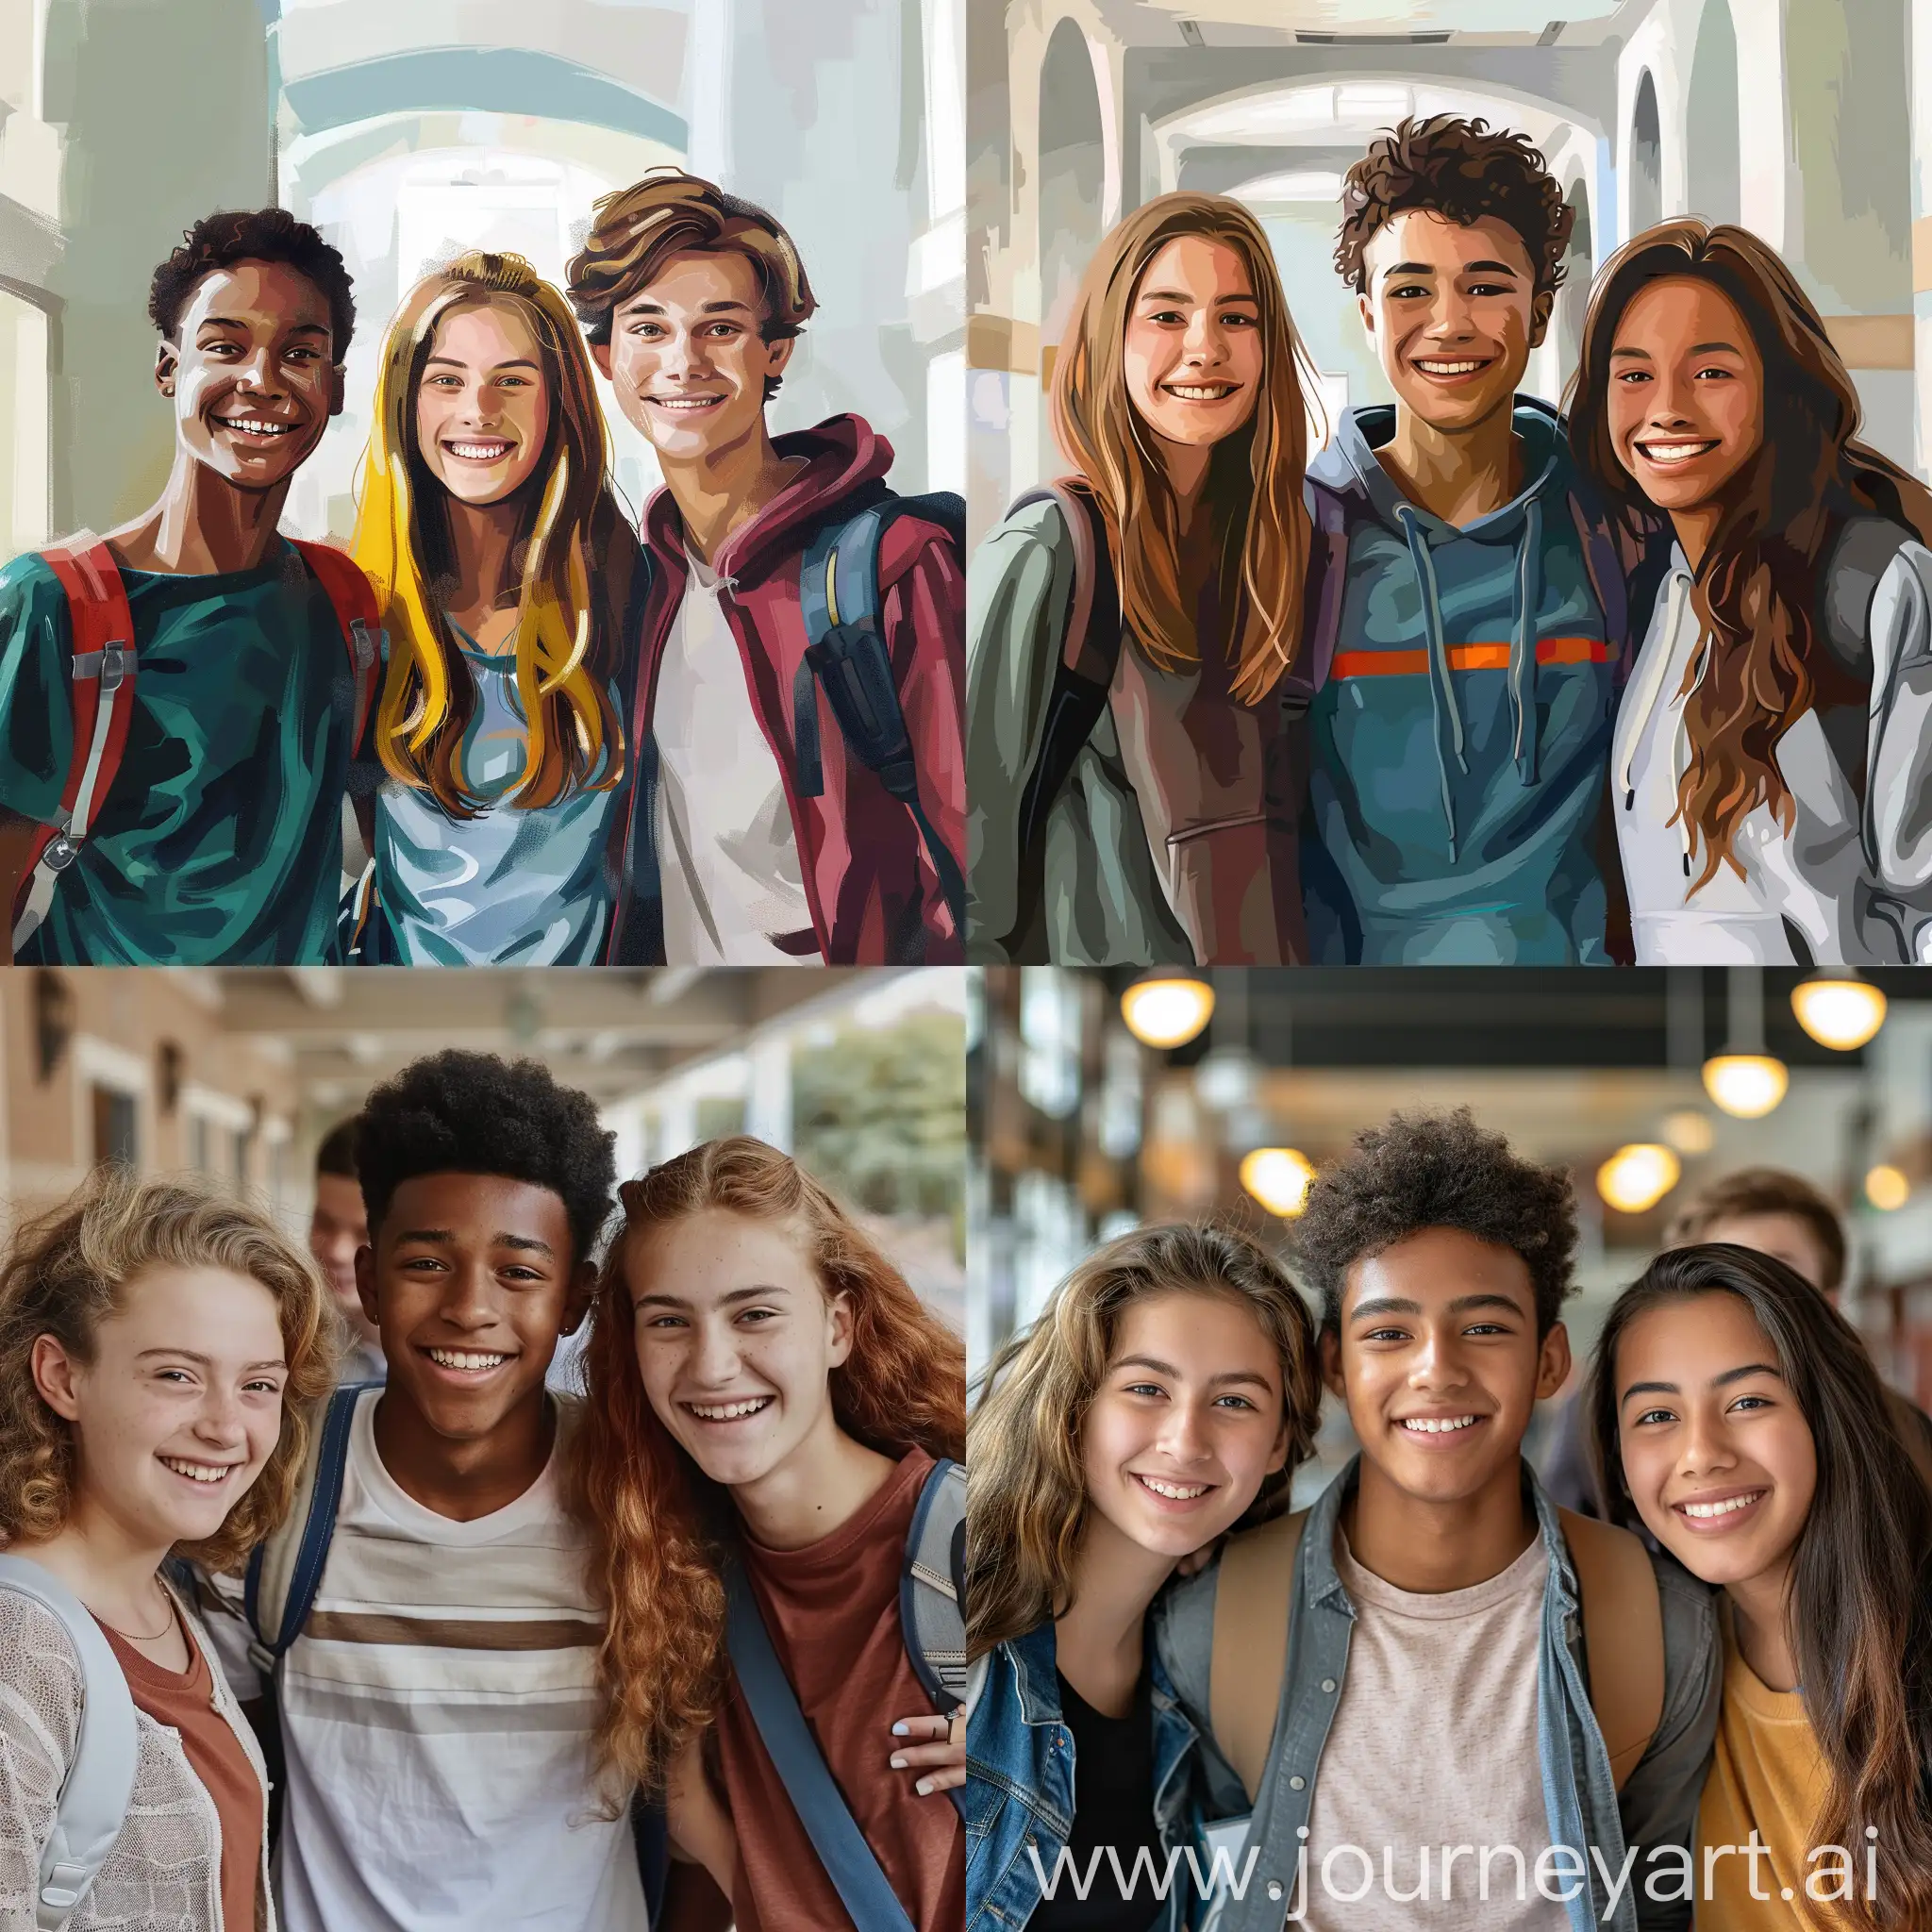  ثلاثة طلاب في المدرسة مبتسمين صورة واقعية  
